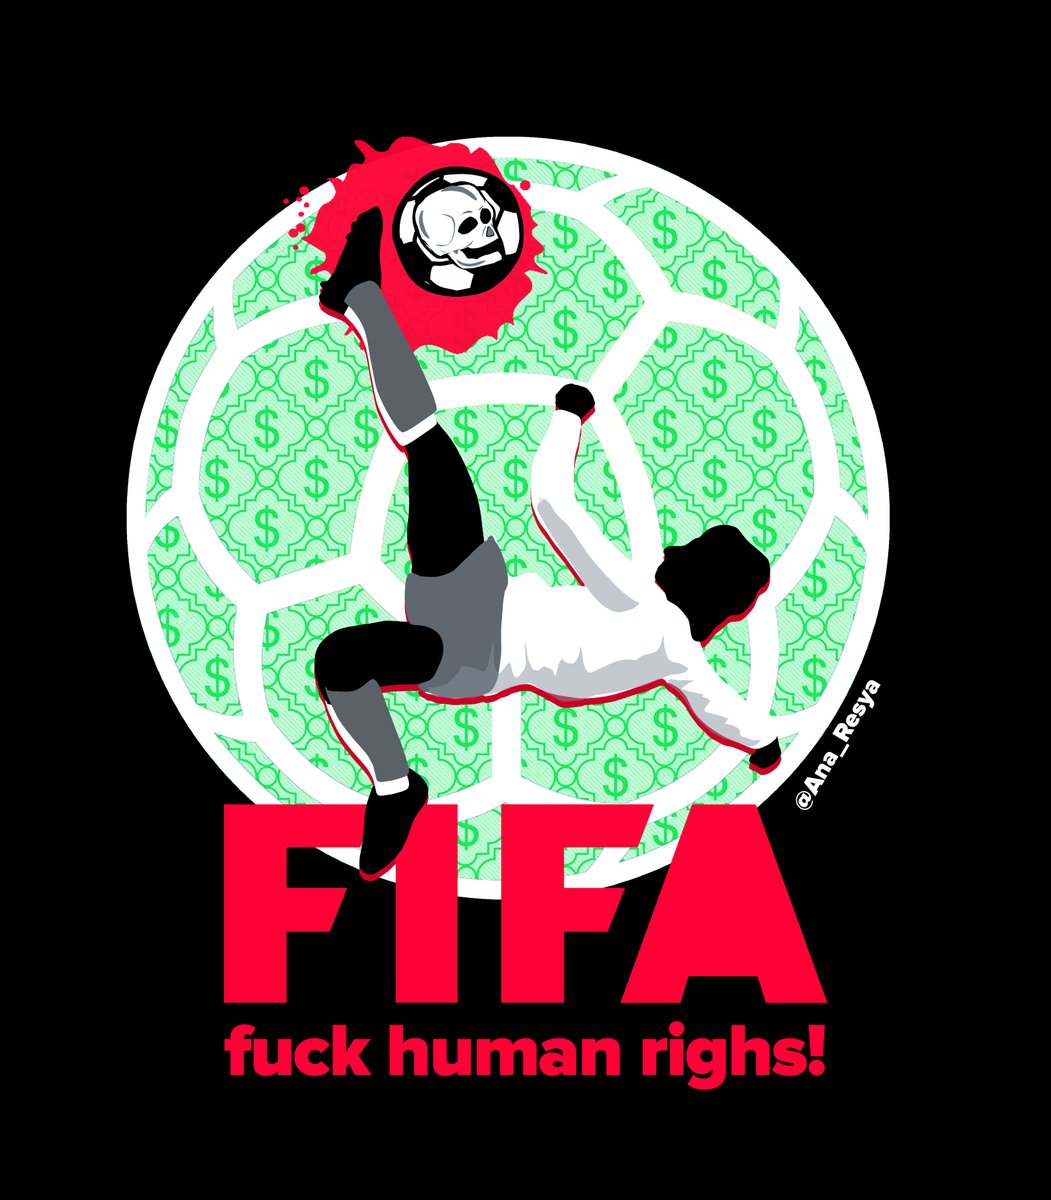 Aquí mi logo alternativo para la #FIFA
Porque no es solo #Qatar, es la FIFA. Organización corrupta a la q se la llevan sudando los derechos humanos desde hace décadas
Es lamentable q el deporte mundial este secuestrado por organismos como la FIFA #BoicotQatar2022 #boicotFIFA🧵⬇️